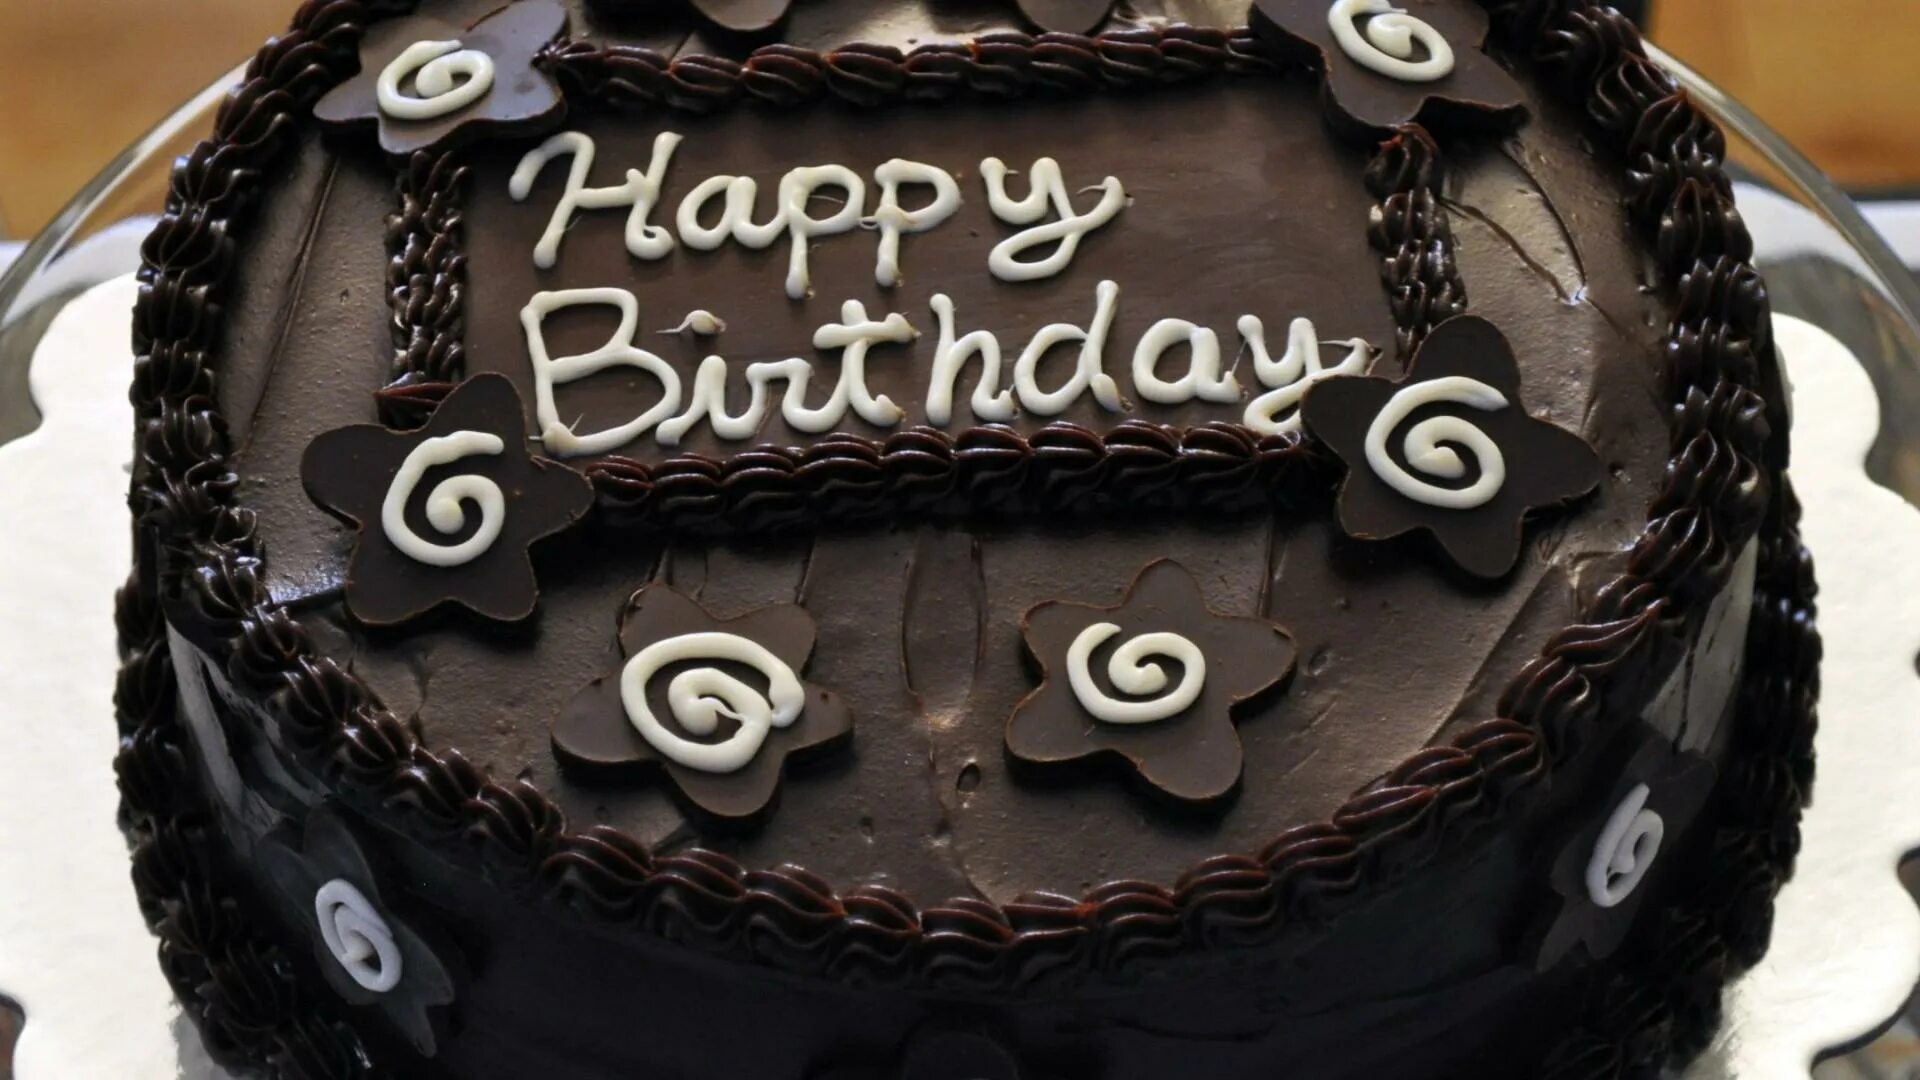 Торт с днем рождения!. Надпись на торте с днем рождения. Торт для парня. Шоколадный торт на день рождения. С днем рождения юноше 16